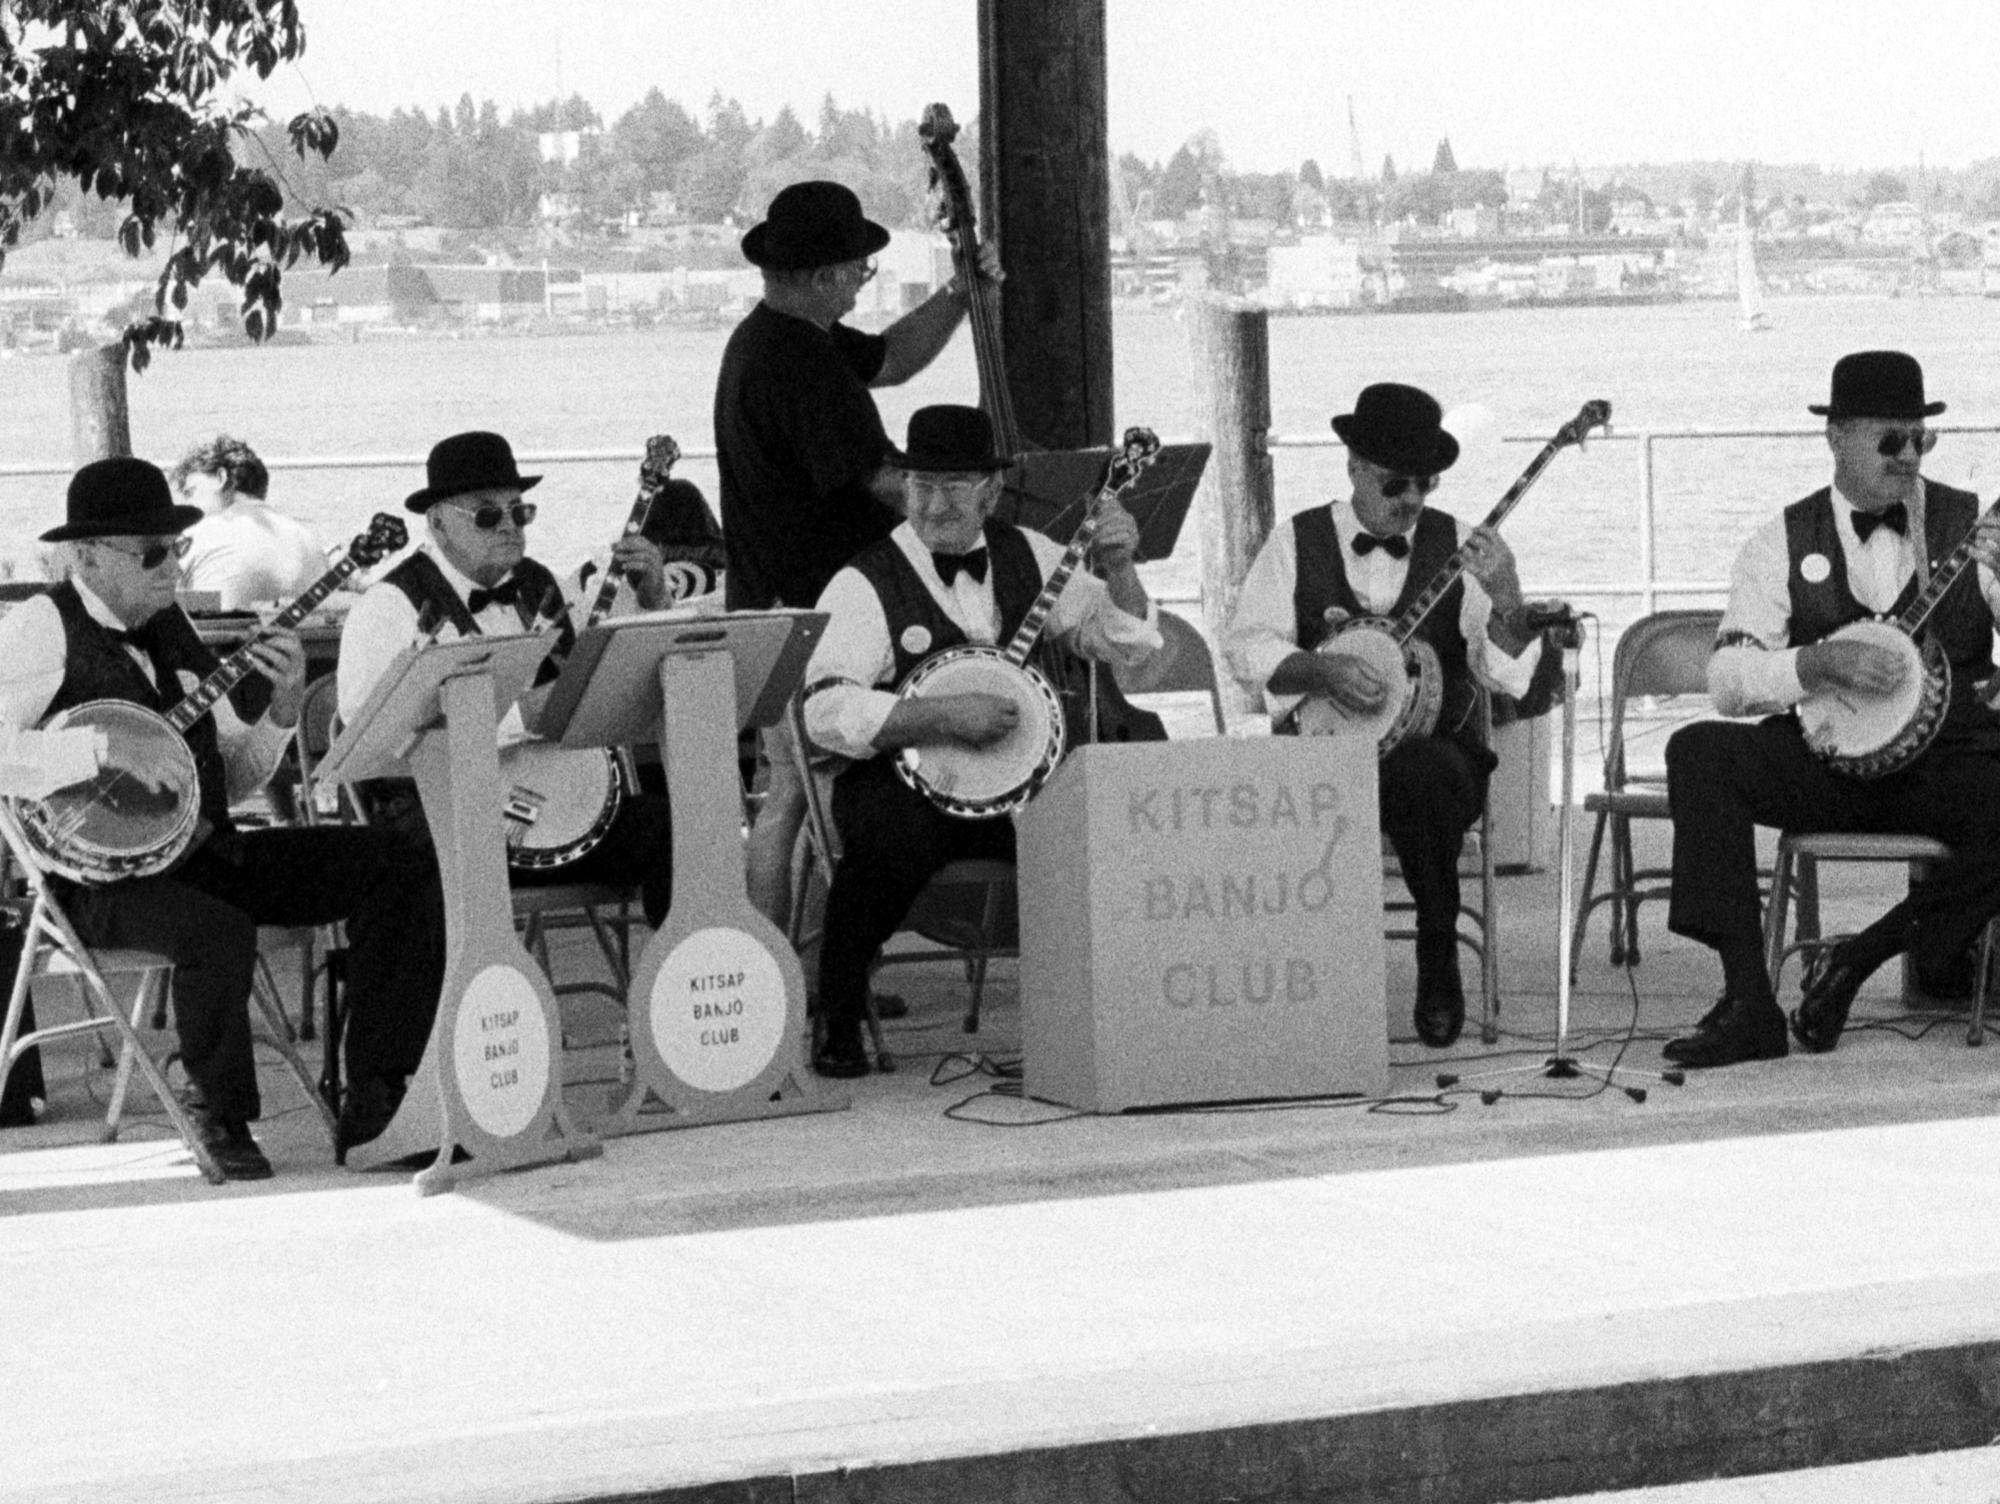 Seattle (Black & White) - Kitsap Banjo Club